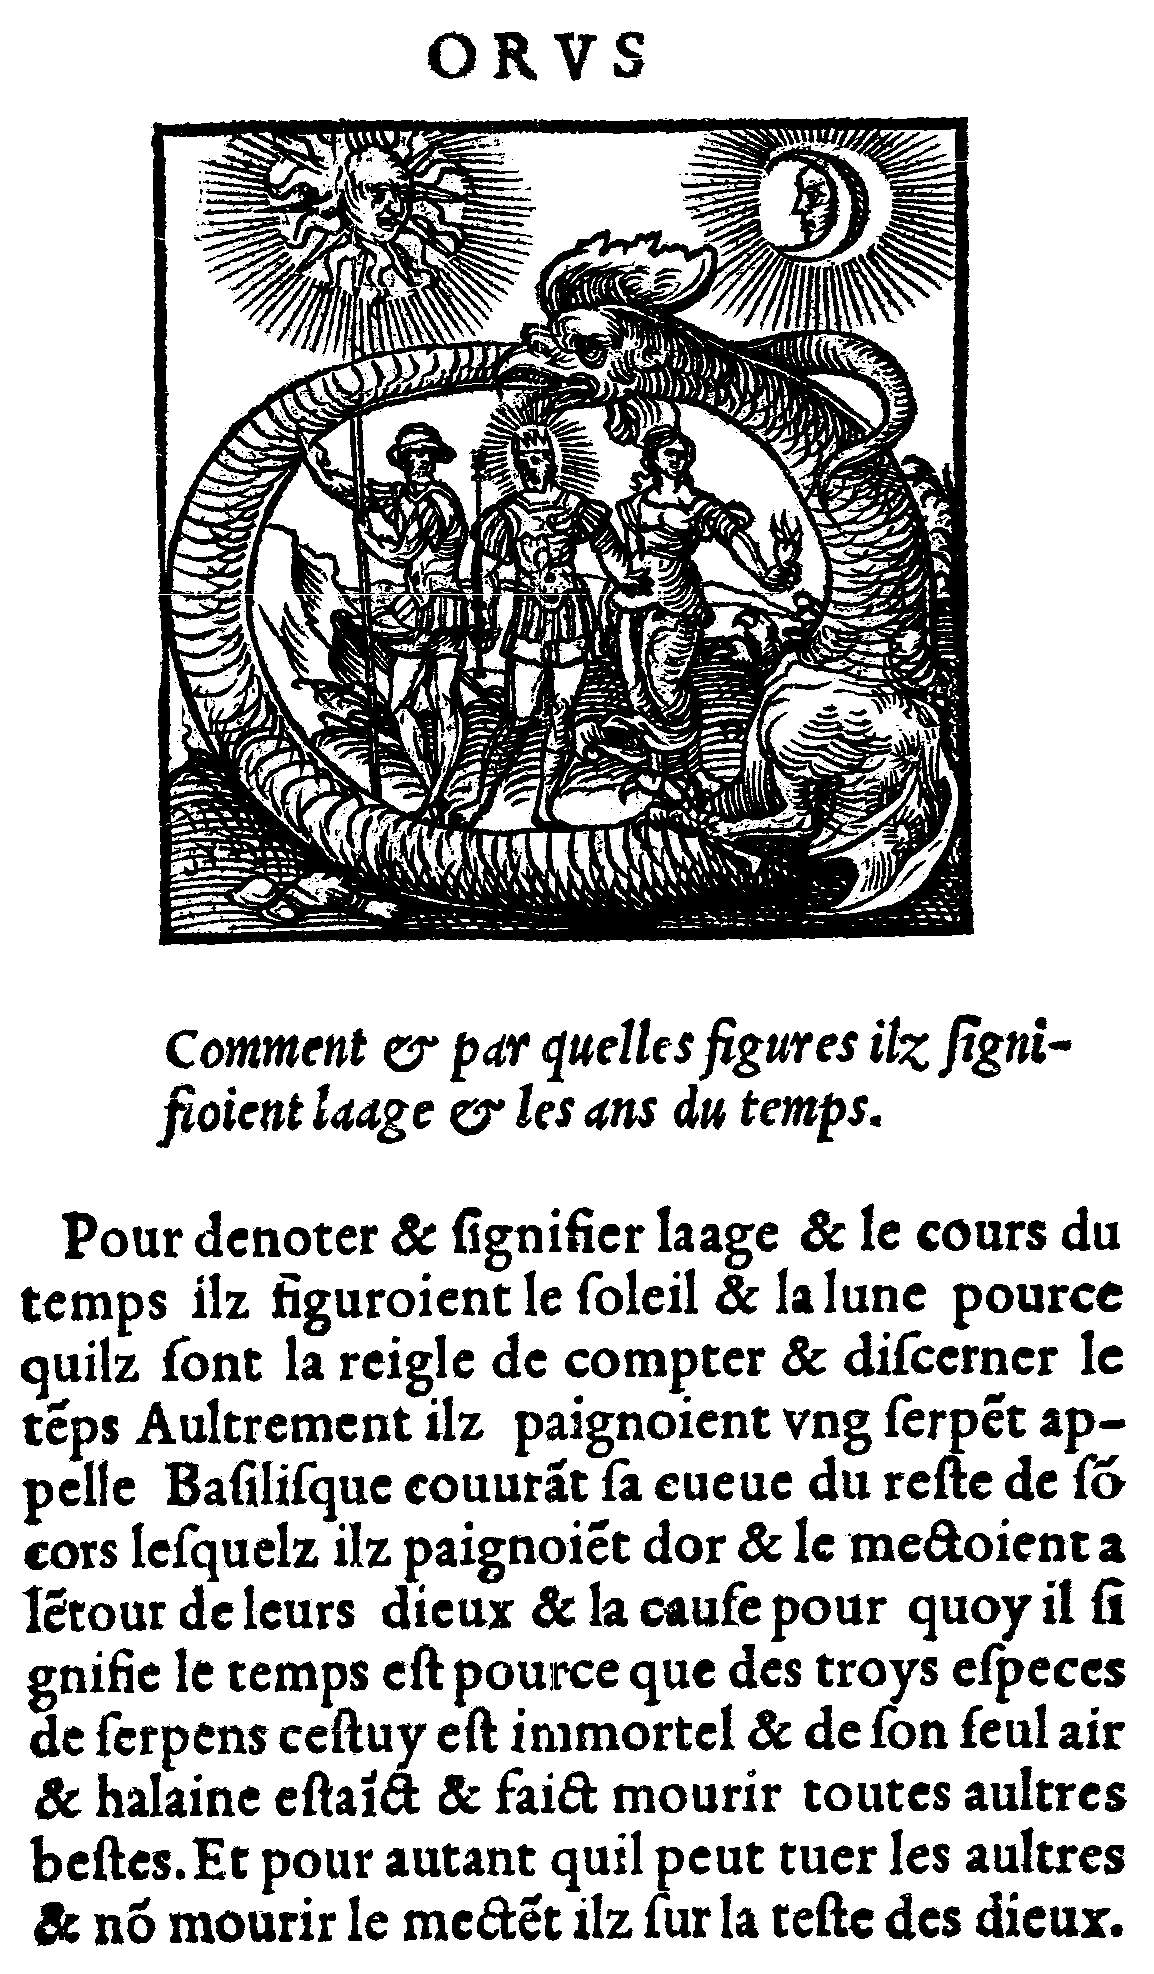 le serpent (daprès Horapollon), édition J.Kerver, 1543